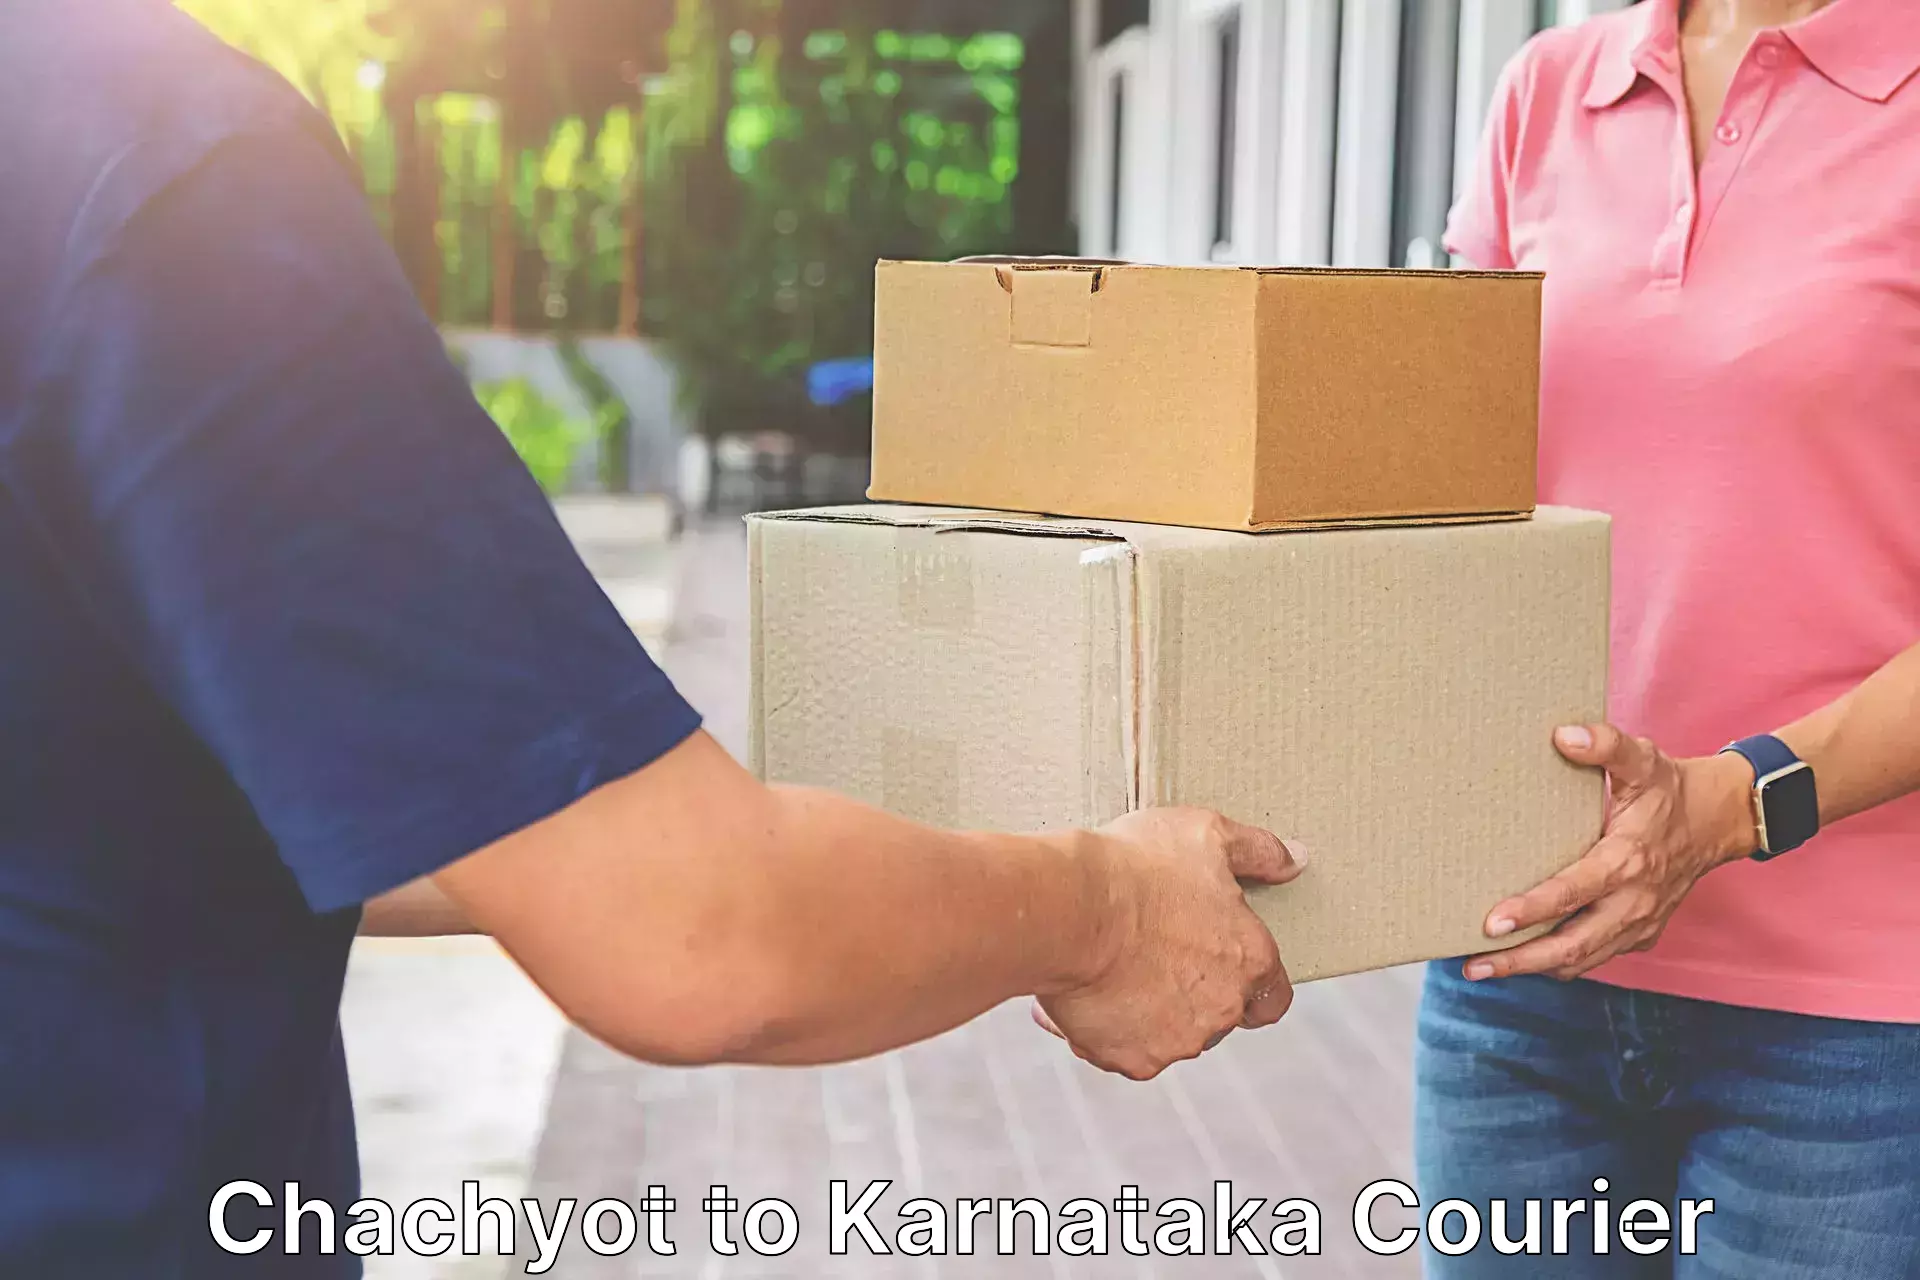 Budget-friendly shipping Chachyot to Karnataka